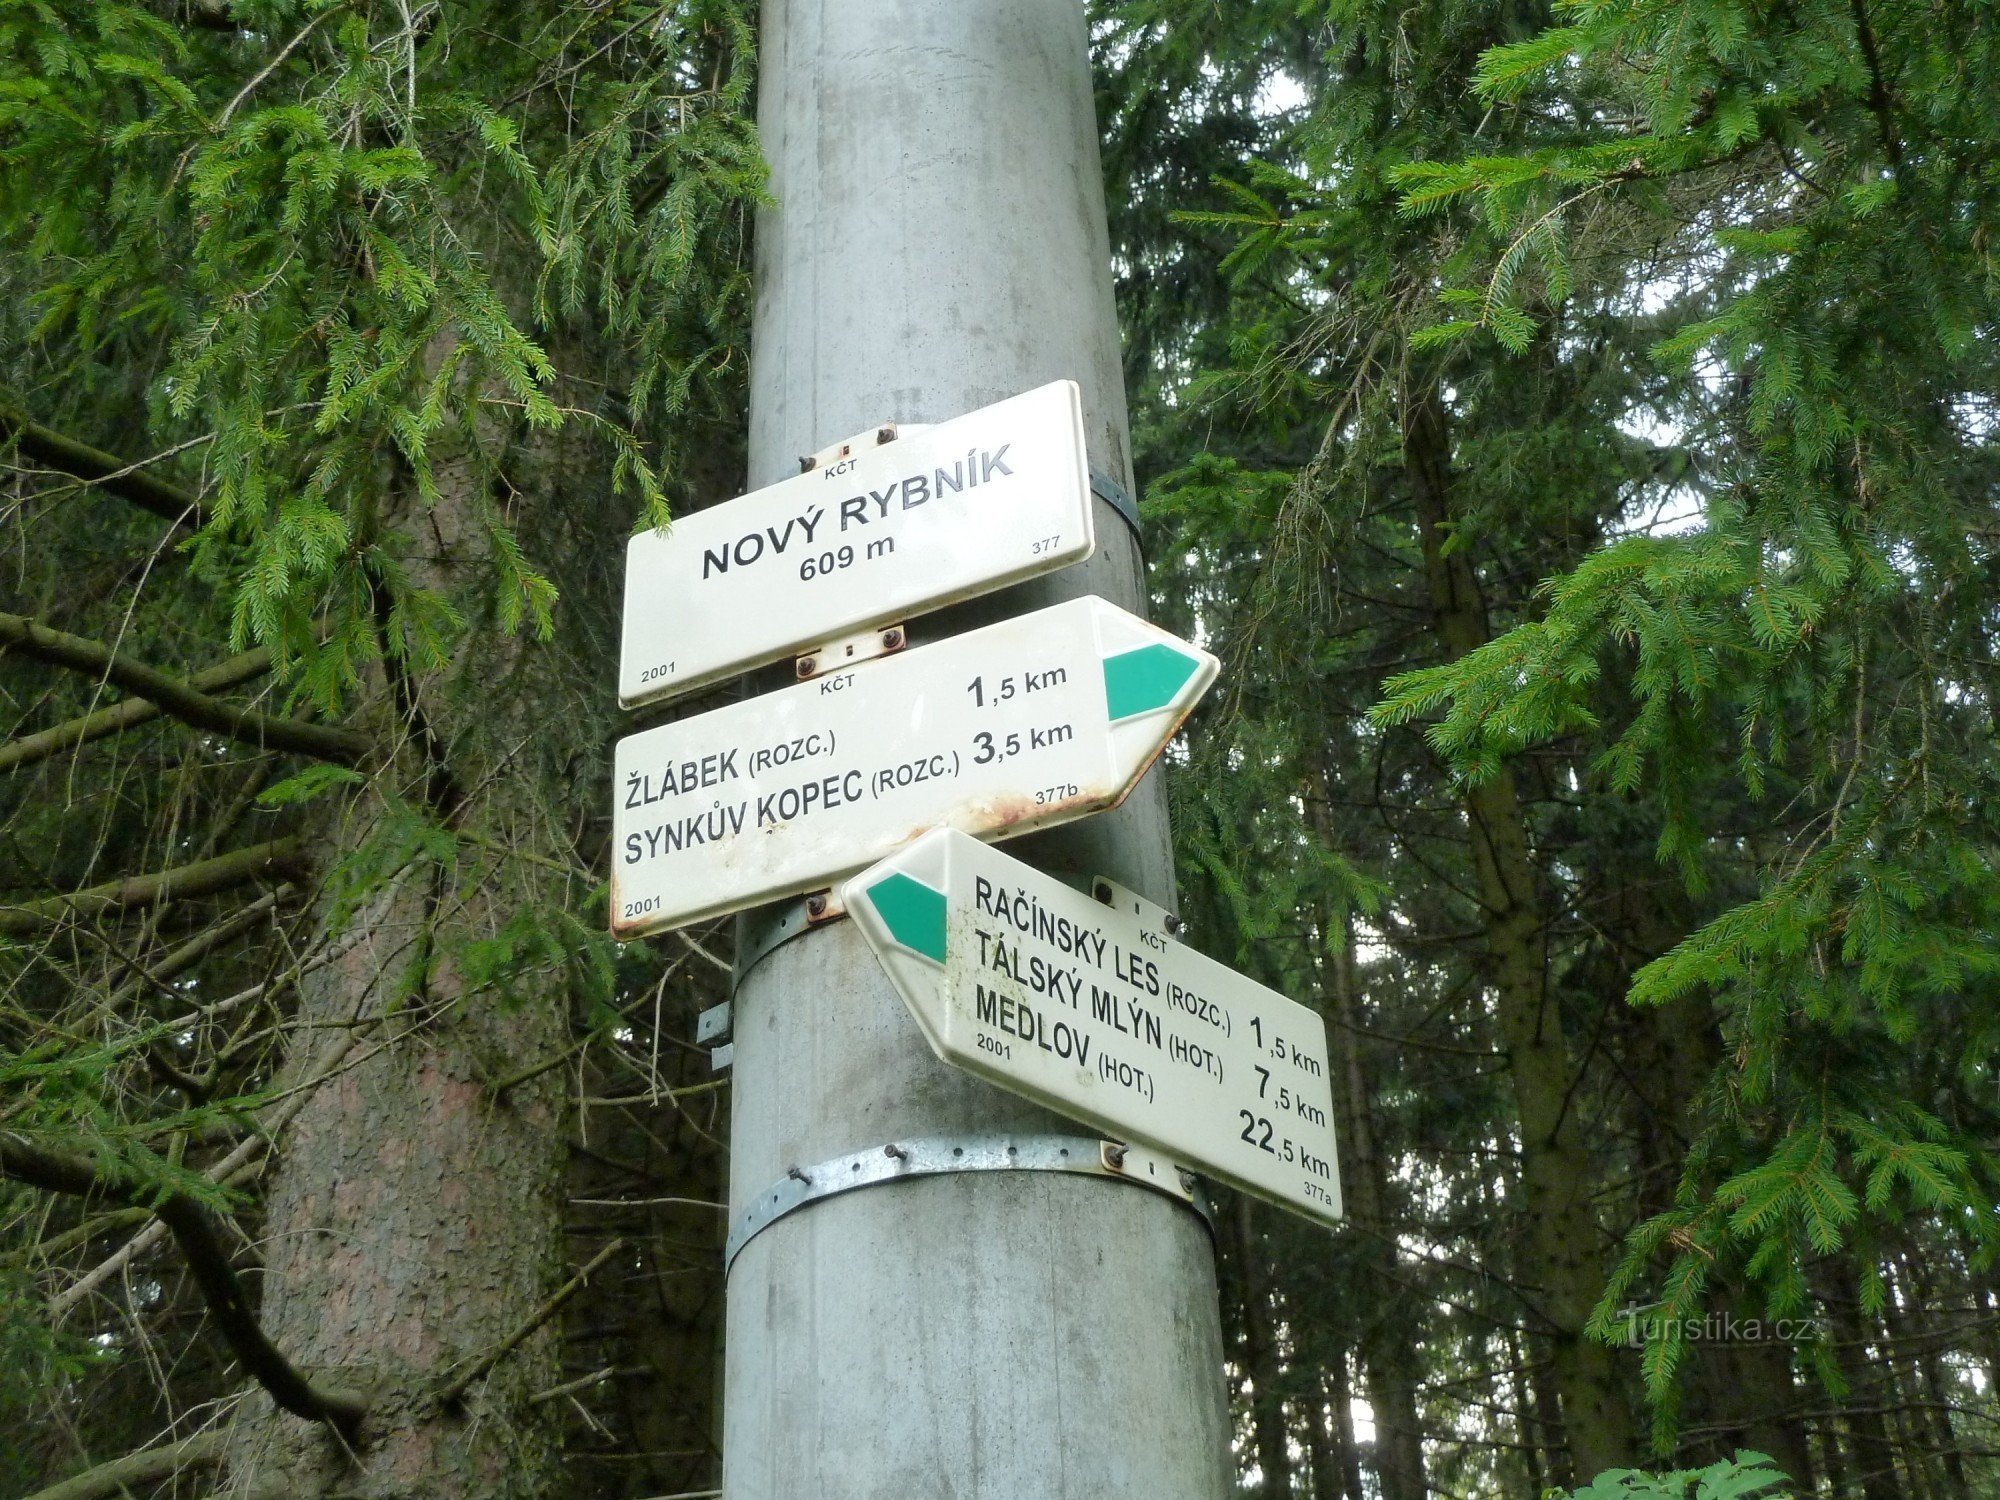 the Nový rybník tourist crossroads